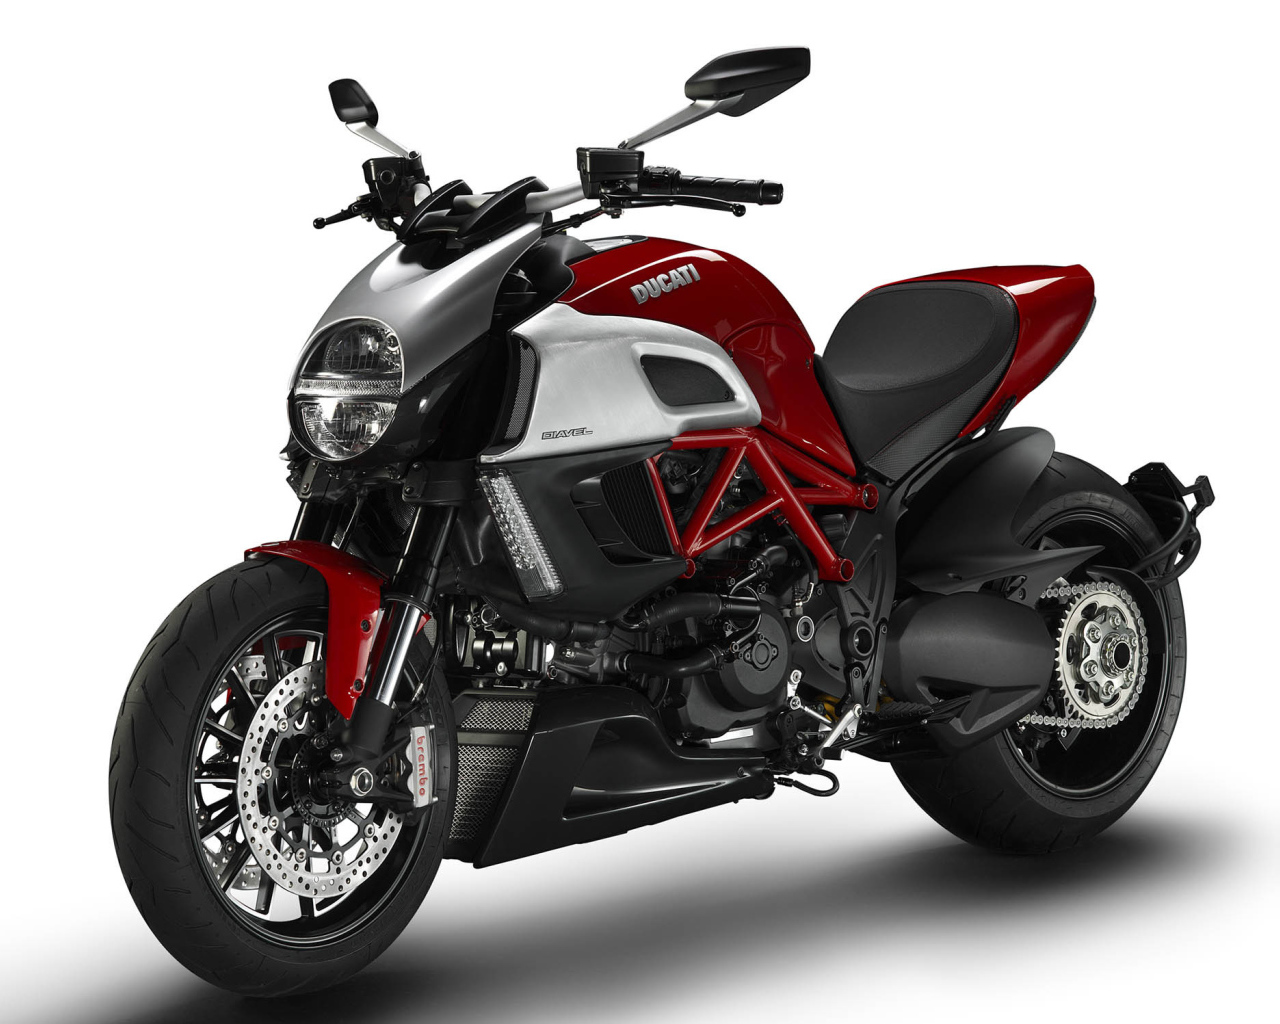 Невероятный мотоцикл Ducati Diavel